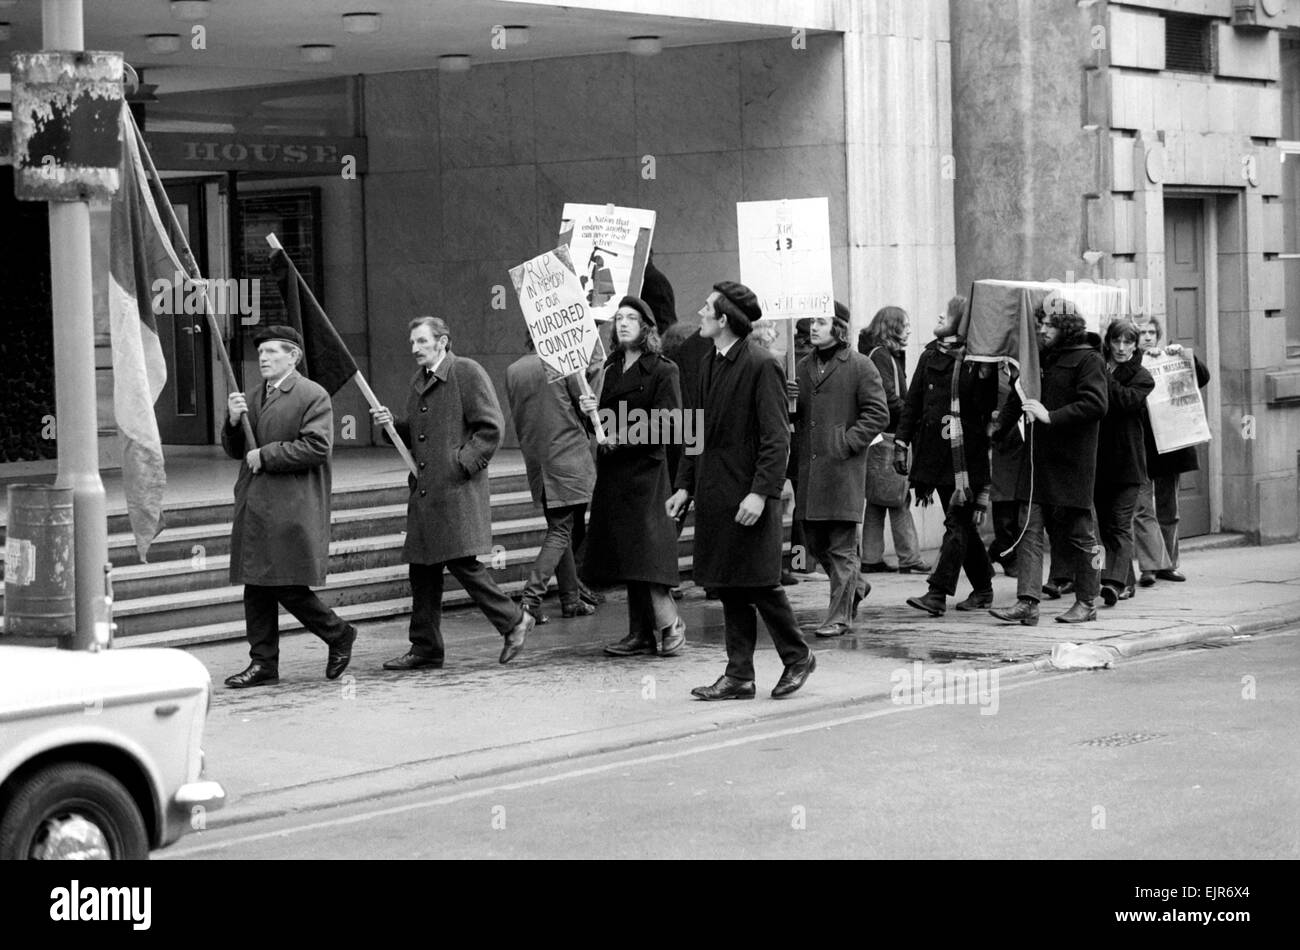 I.R.A. Manifestanti hanno condotto un tricolore irlandese e una bara fuori l'esercito Centro carriere nella fontana St, Manchester. Essi hanno affermato di essere dal ramo di Manchester provvisorie del Sinn Fein. La protesta è stata contro la campagna britannica in Irlanda del Nord, secondo uno dei dimostranti silenzioso. Gennaio 1972 72-1044 Foto Stock